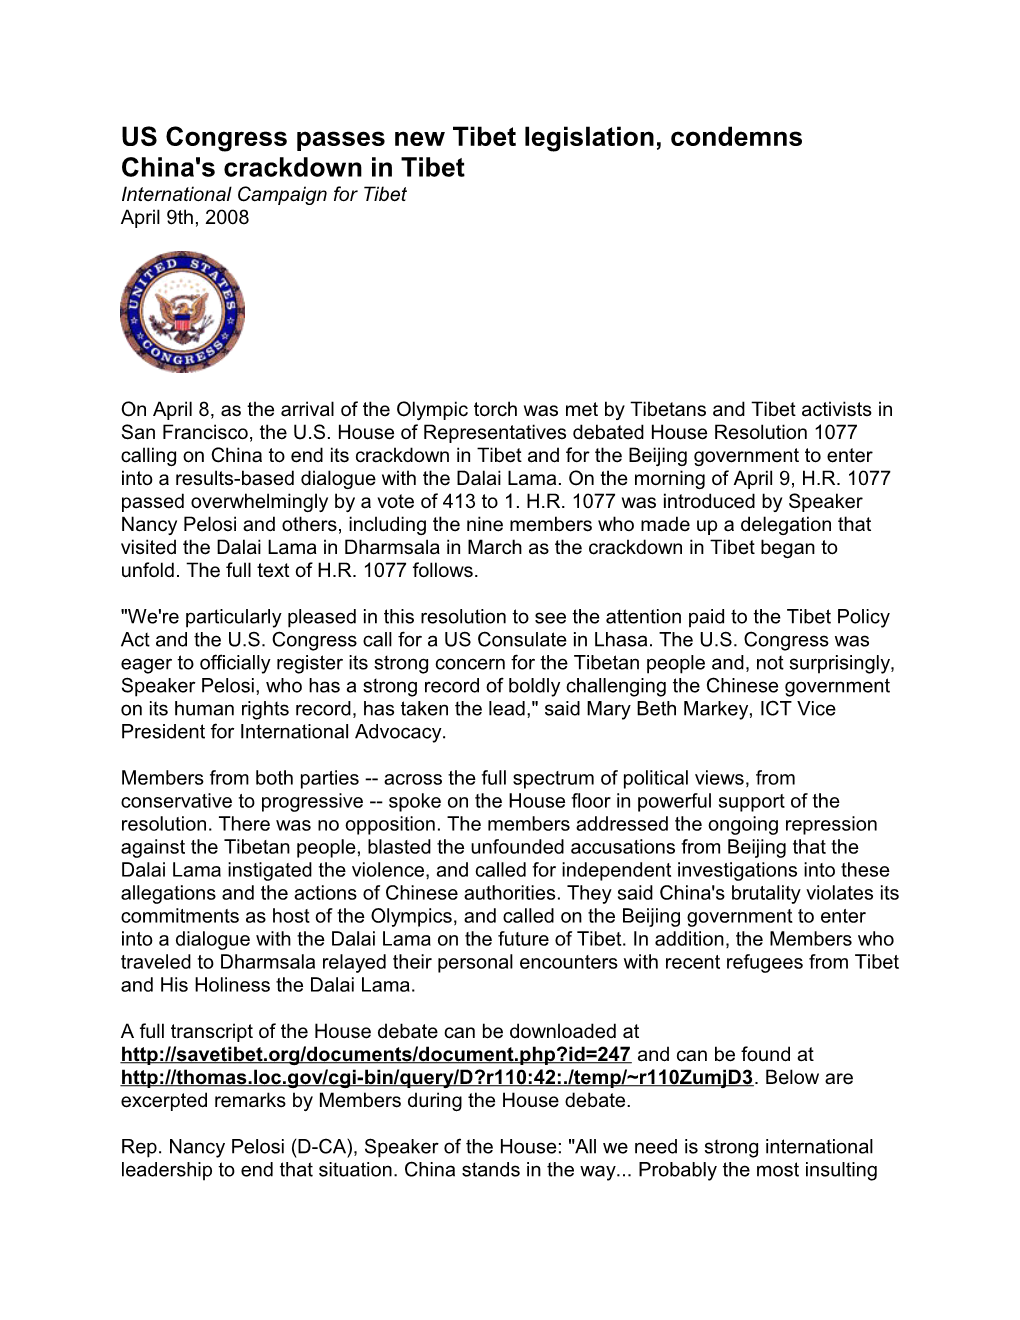 US Congress Passes New Tibet Legislation, Condemns China's Crackdown in Tibet